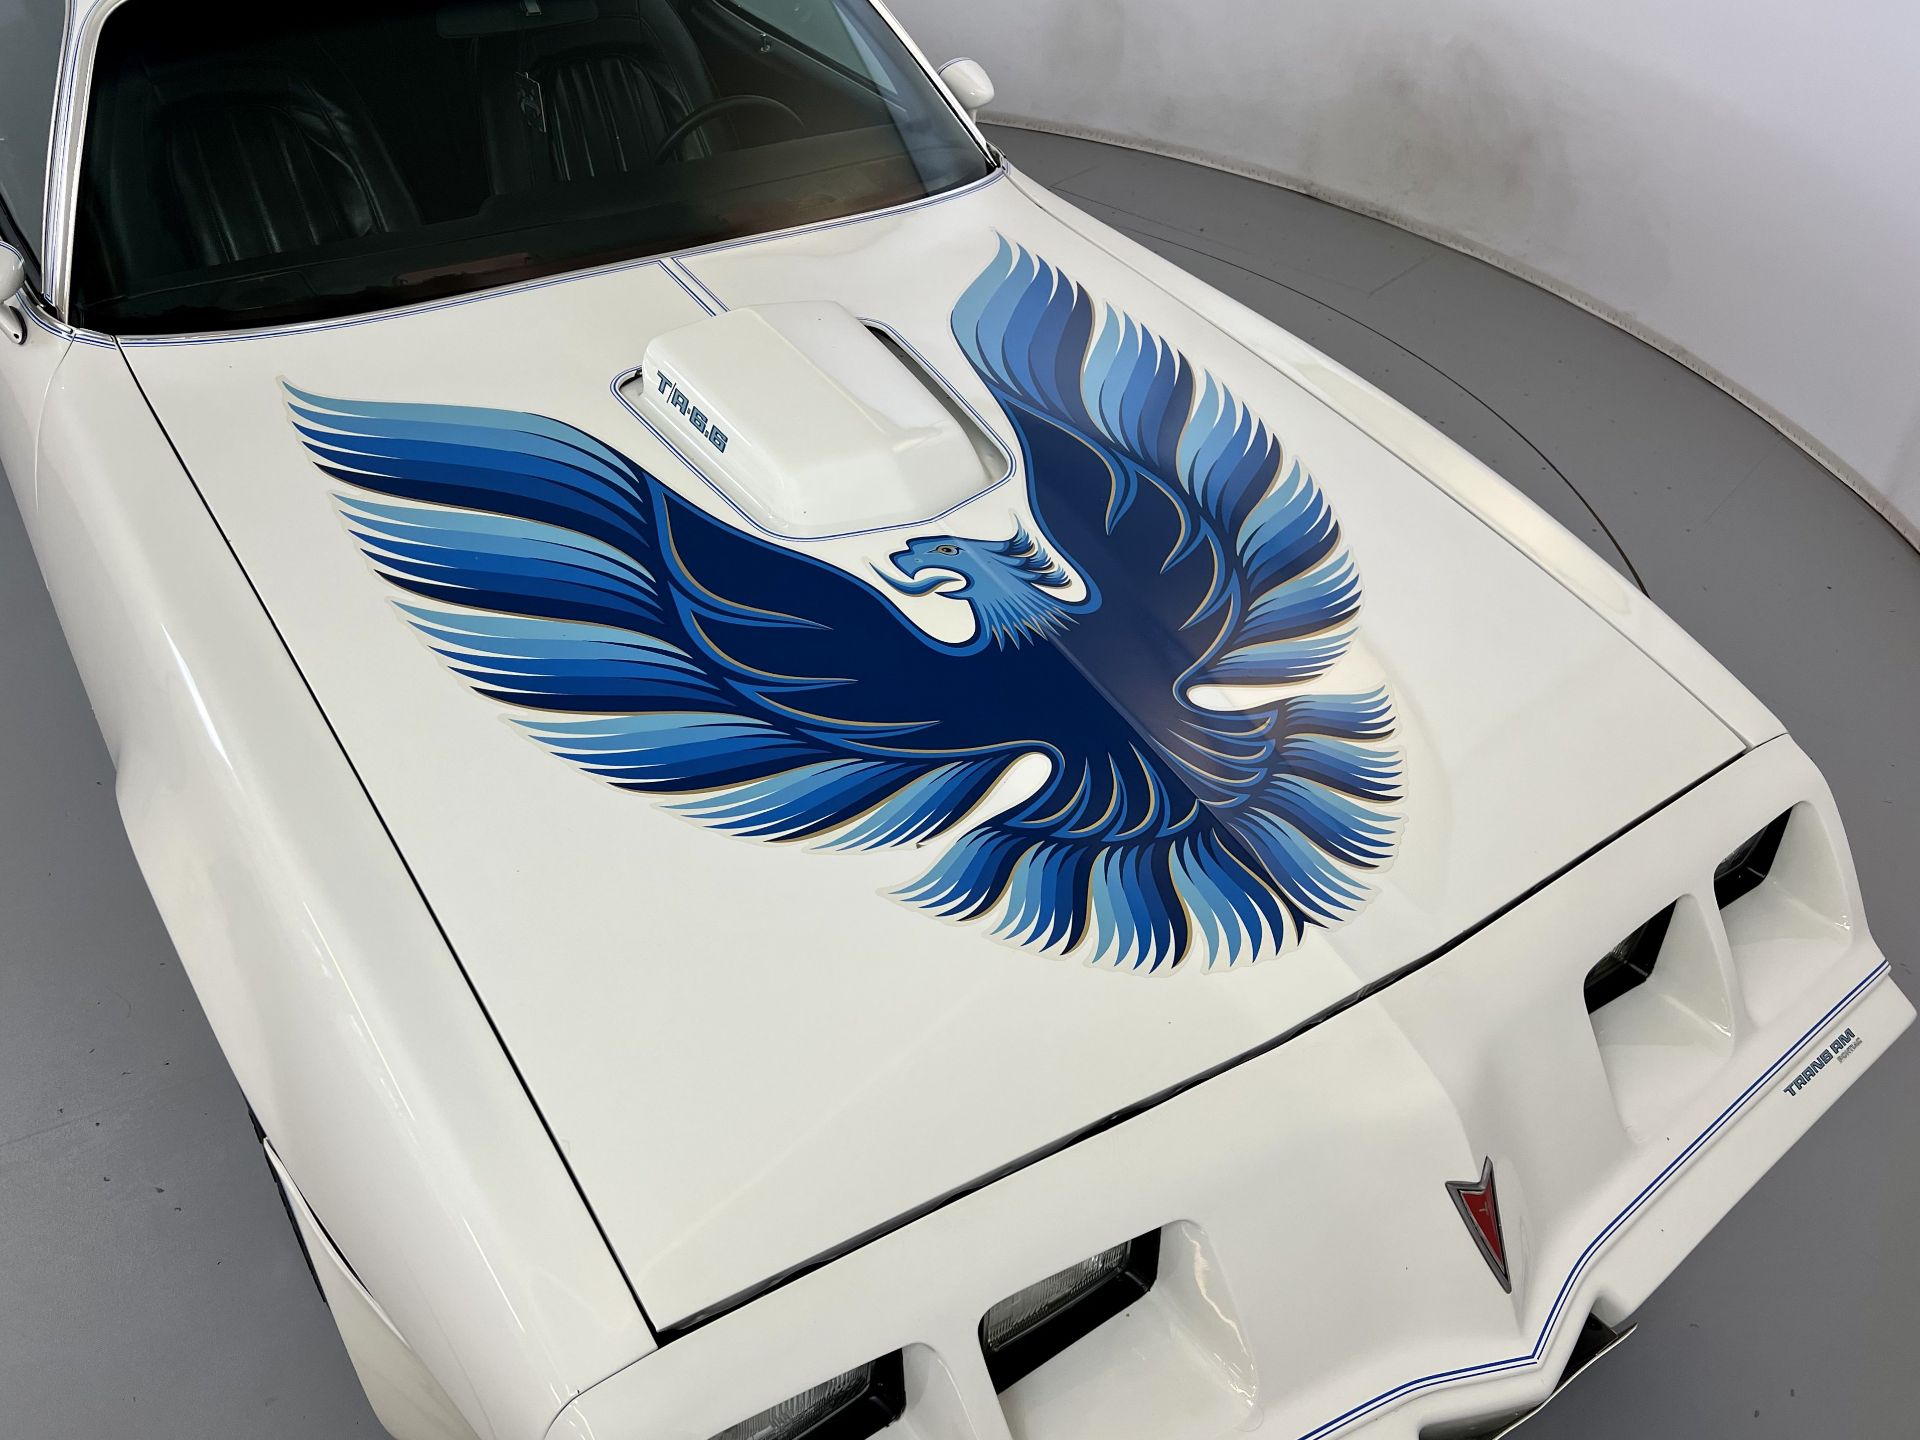 Pontiac Firebird - Trans Am Tribute - Image 13 of 31